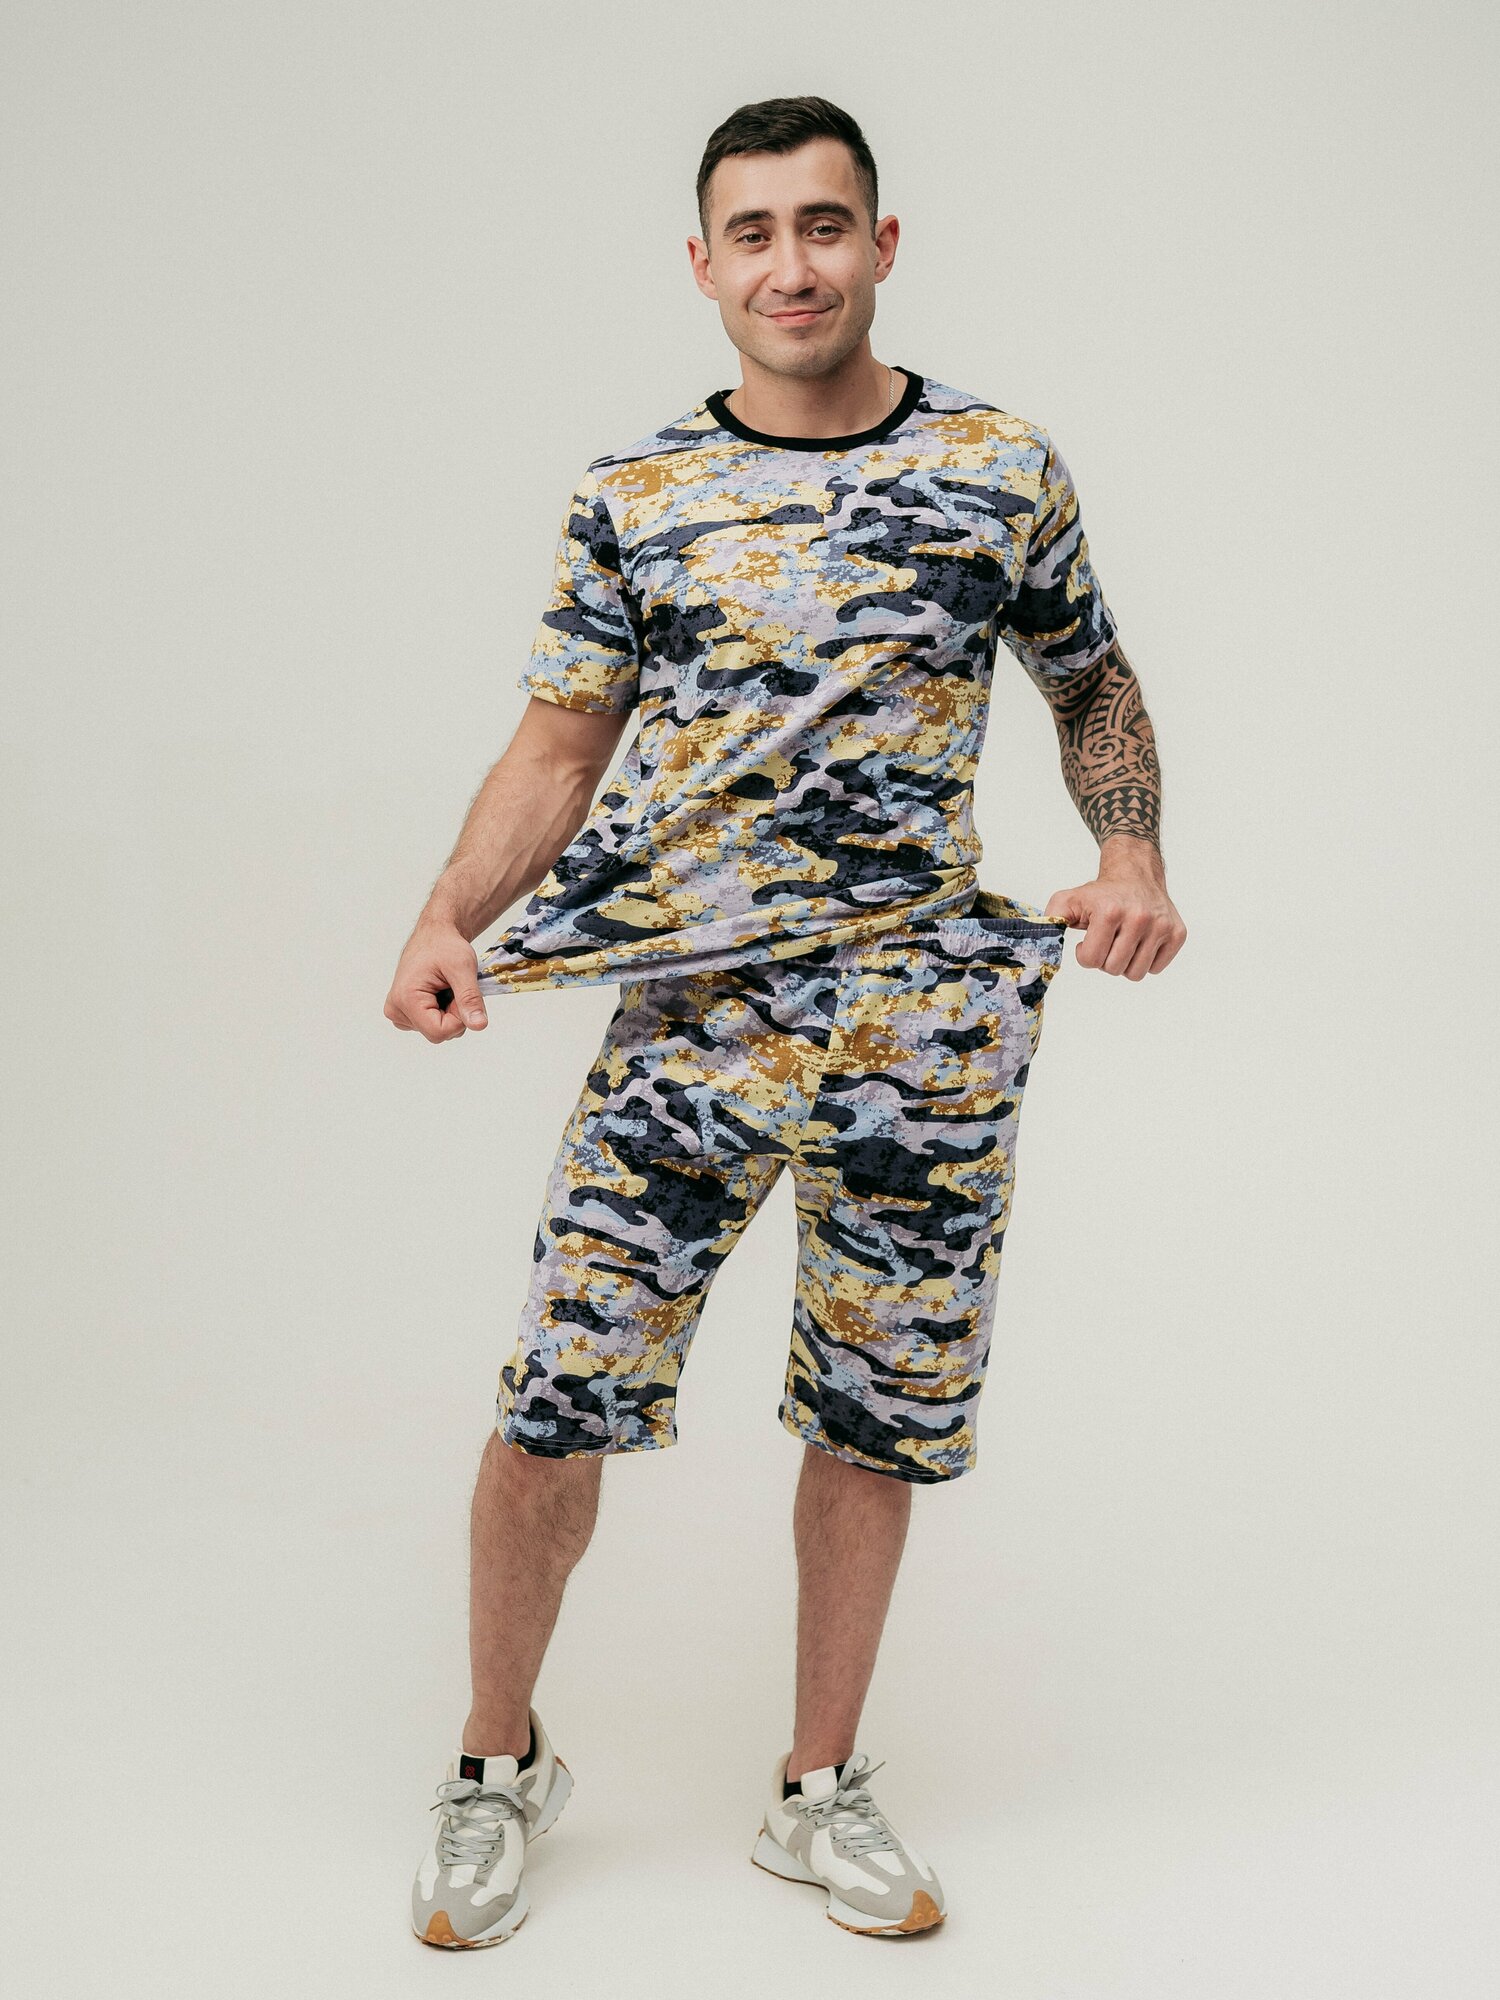 Мужская пижама, мужской пижамный комплект ARISTARHOV, Футболка + Шорты, графит, бежевый, размер 54 - фотография № 12